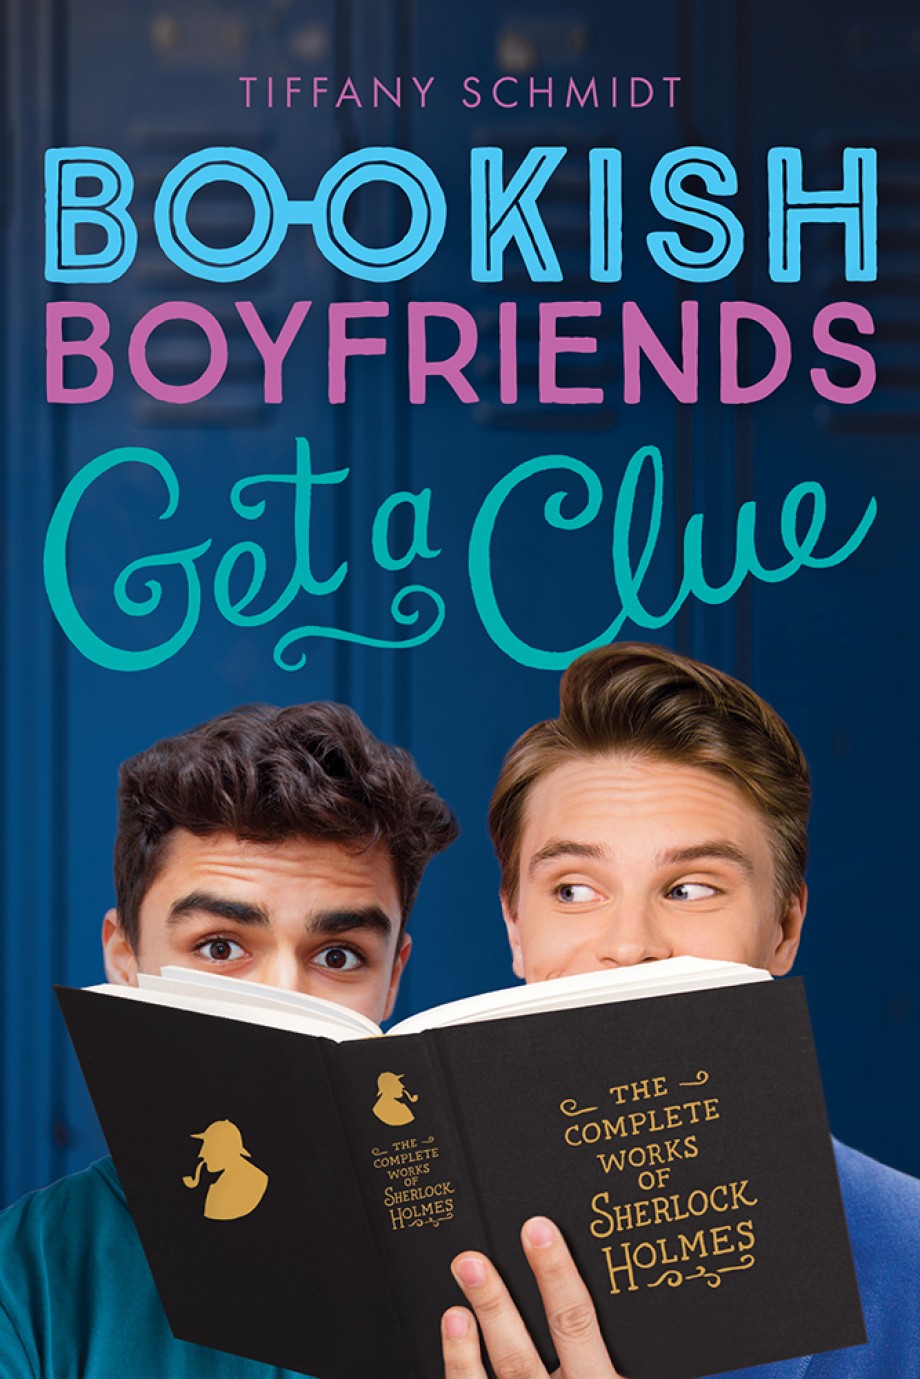 Get a Clue A Bookish Boyfriends Novel